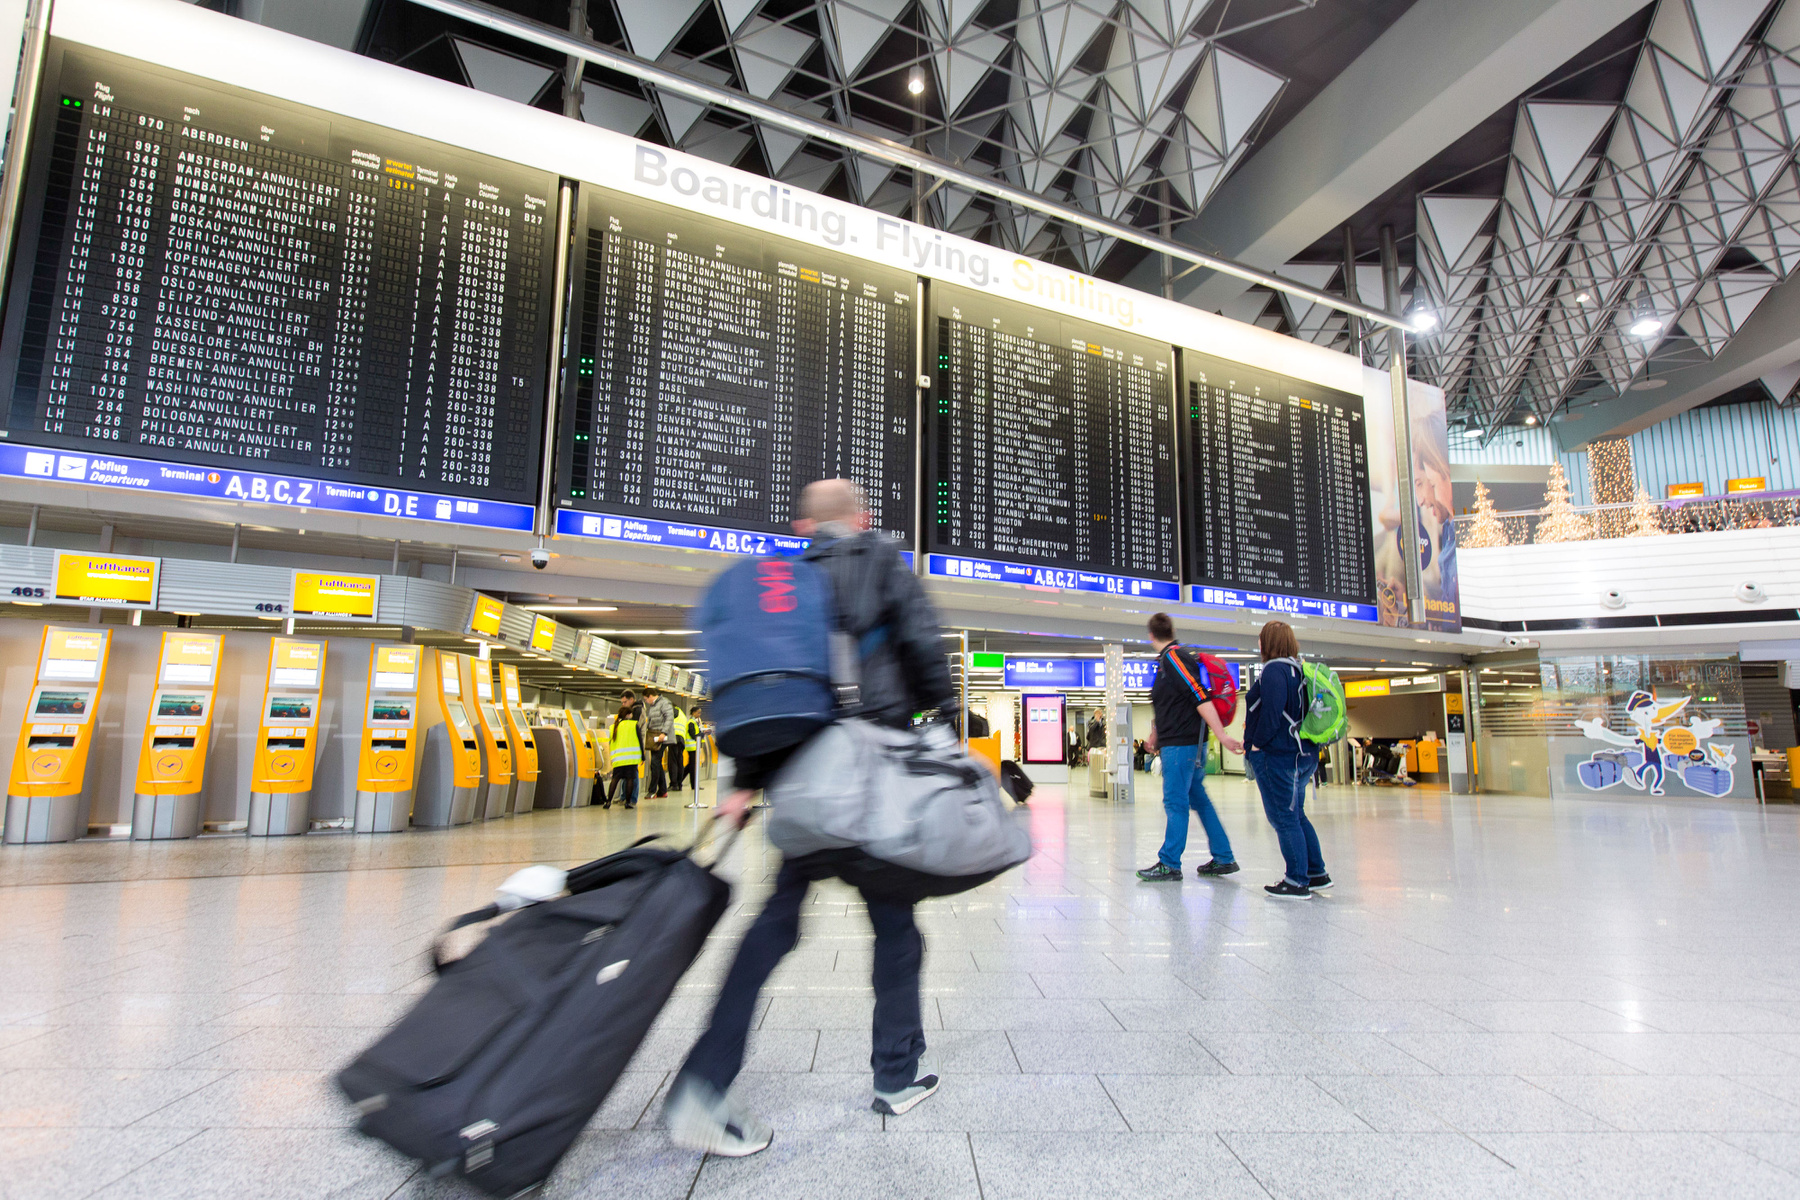 A világ egyik legjelentősebb nemzetközi tranzit-csomópontján két terminál felel a személyforgalomért. Az egyest a Lufthansa és annak partner légitársaságai használják, a kettes terminál pedig más társaságok gépeit fogadja. 